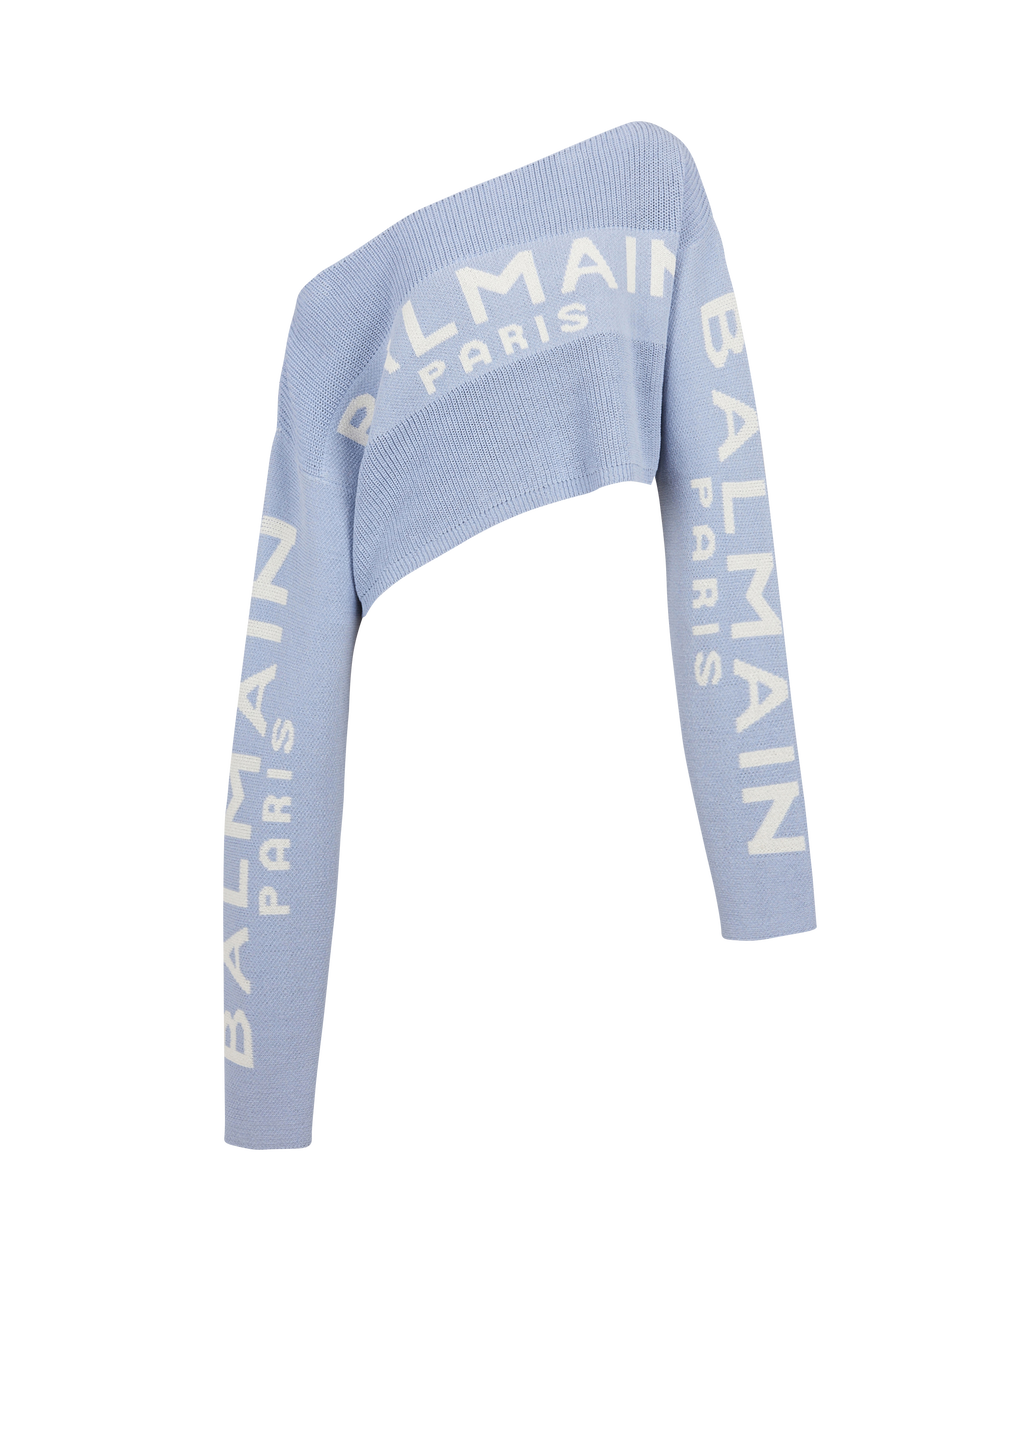 Pullover corto in maglia con logo Balmain graffiti, blu, hi-res